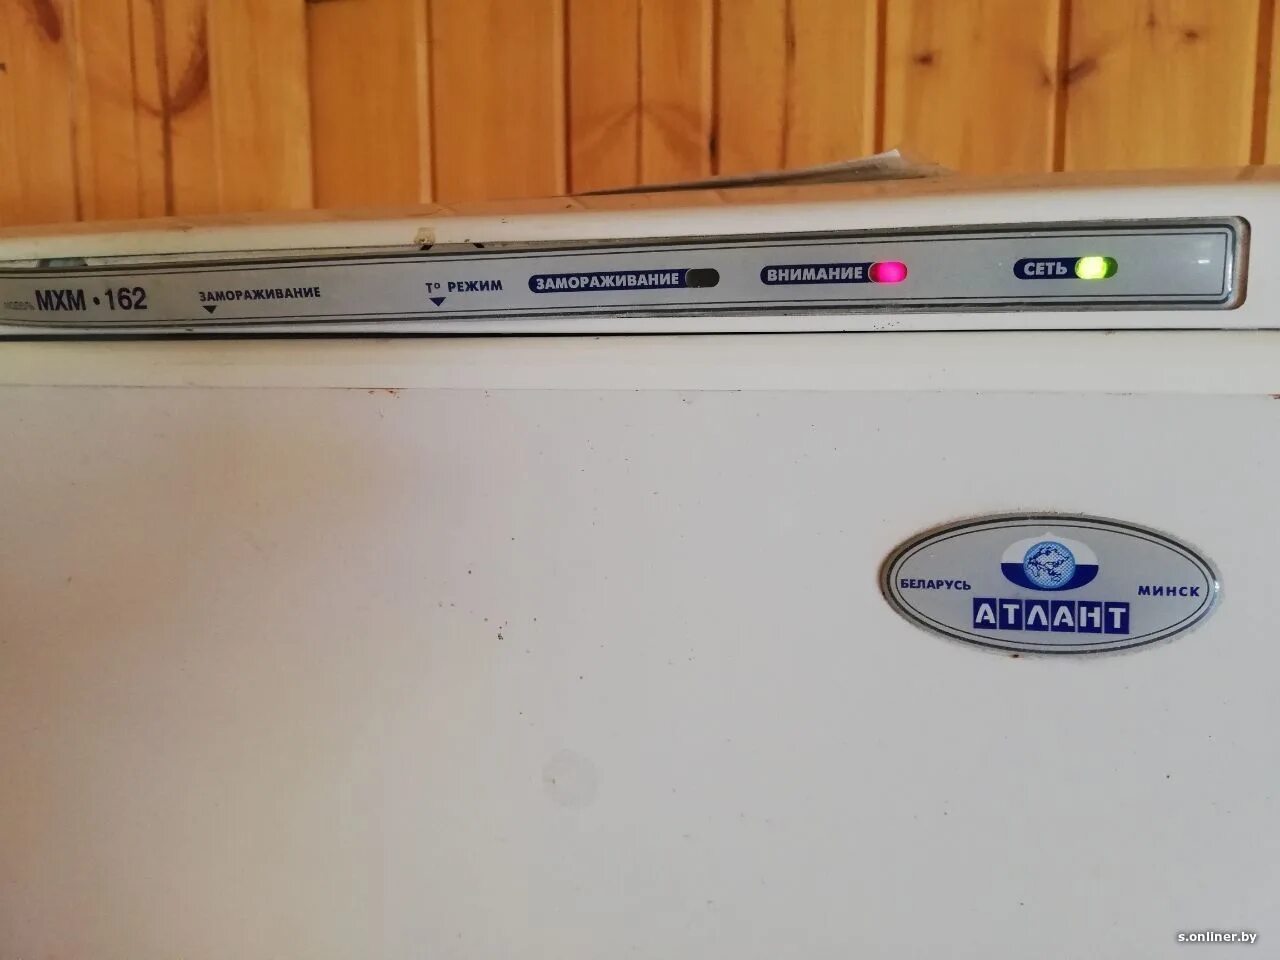 Холодильник Атлант двухкамерный 4410 индикаторы. Холодильник Атлант 2 Compressors индикаторы на панели. Панель управления холодильника Атлант 2 компрессора. Атлант холодильник 2 компрессора панель индикаторов. Холодильник атлант двухкамерный горит внимание